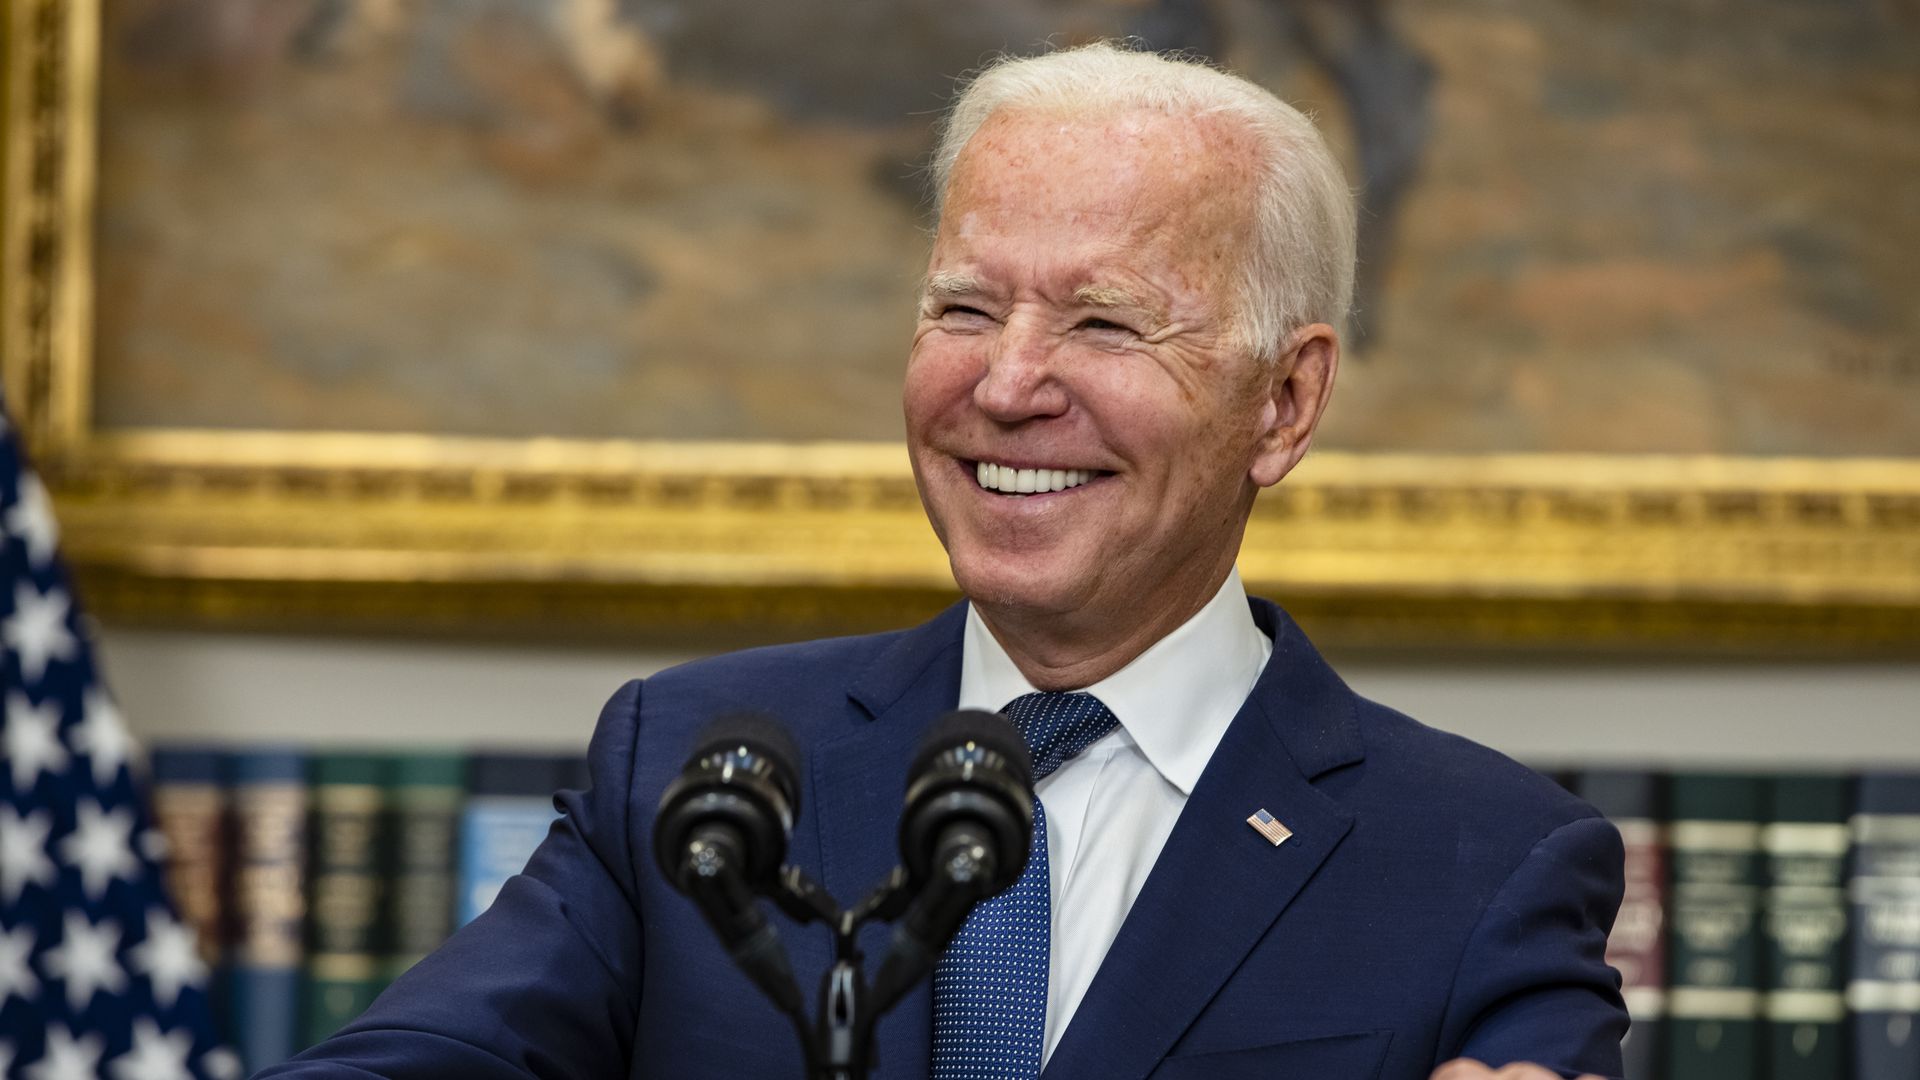 Picture of Joe Biden smiling